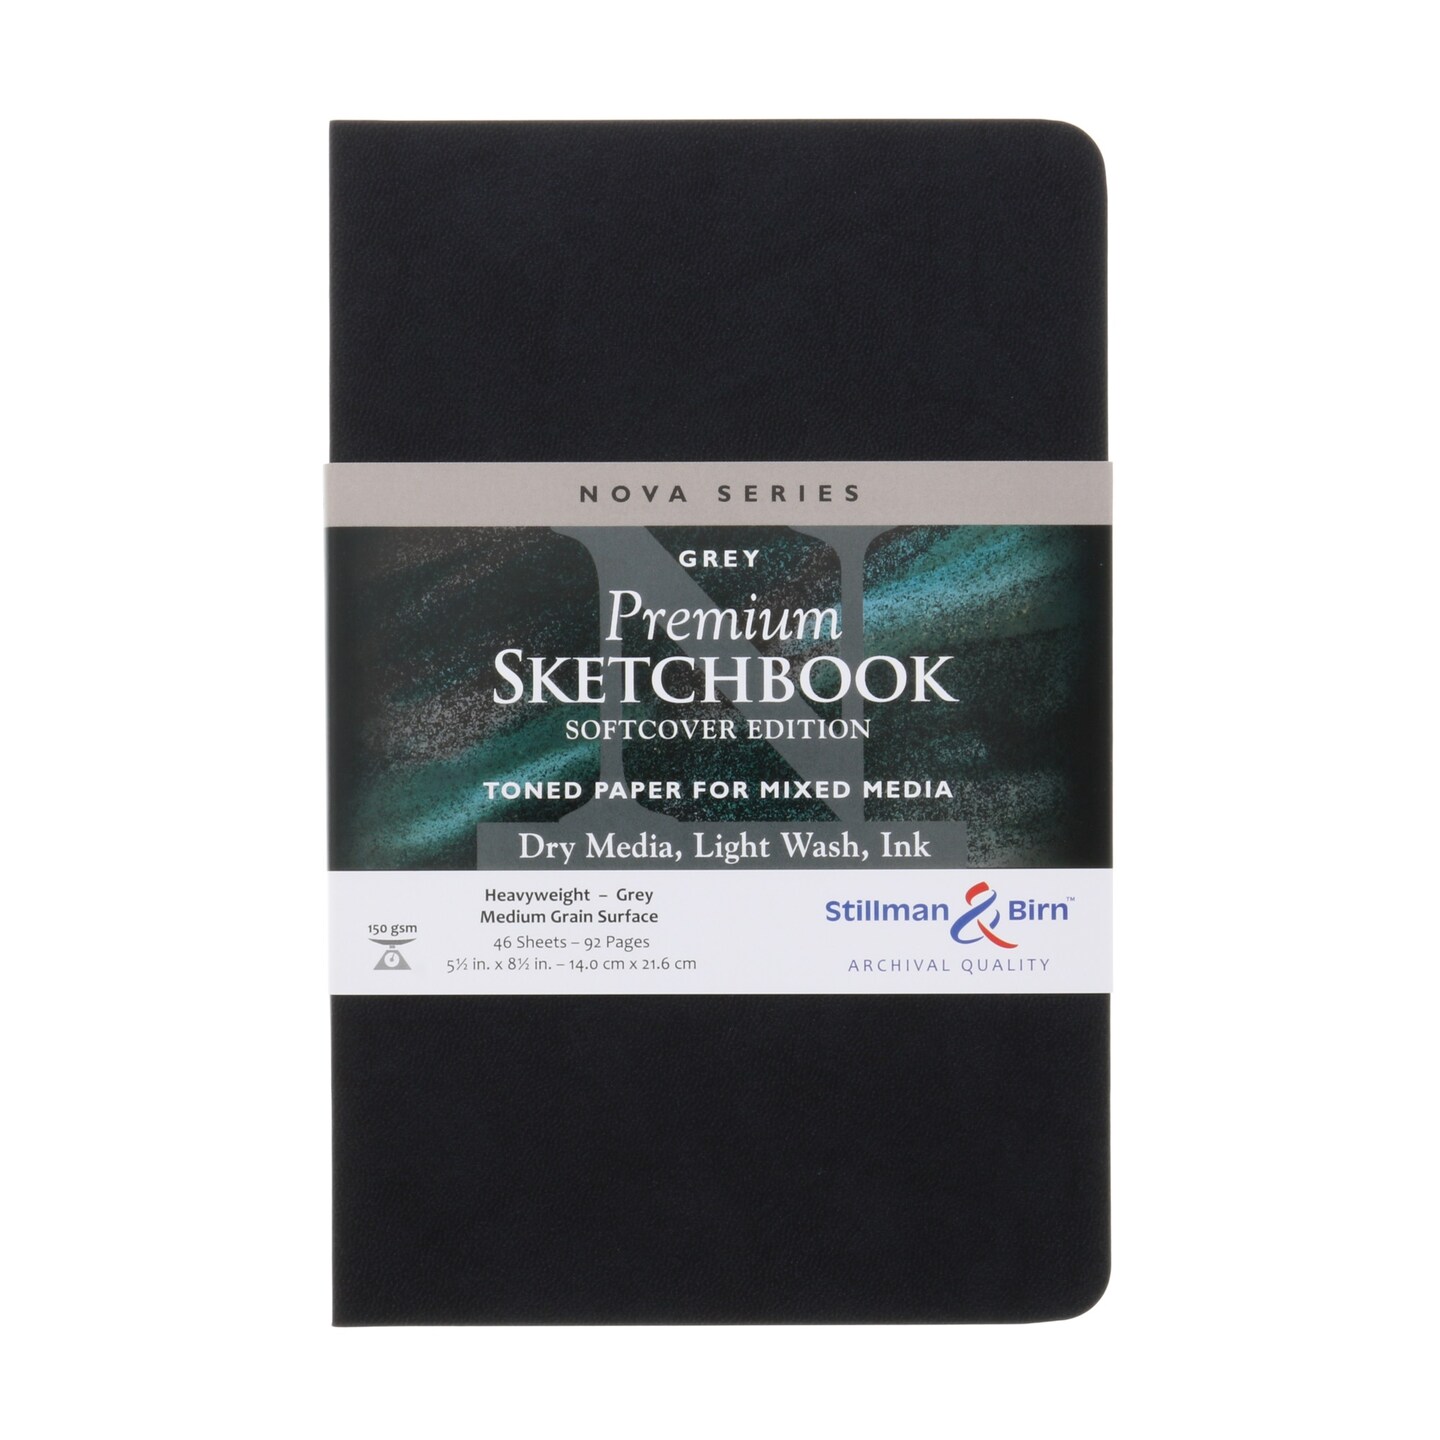 Stillman & Birn Nova Series Grey Softcover Sketchbook, 3.5 x 5.5, 150 GSM  (Heavyweight), Grey Paper, Medium Grain Surface